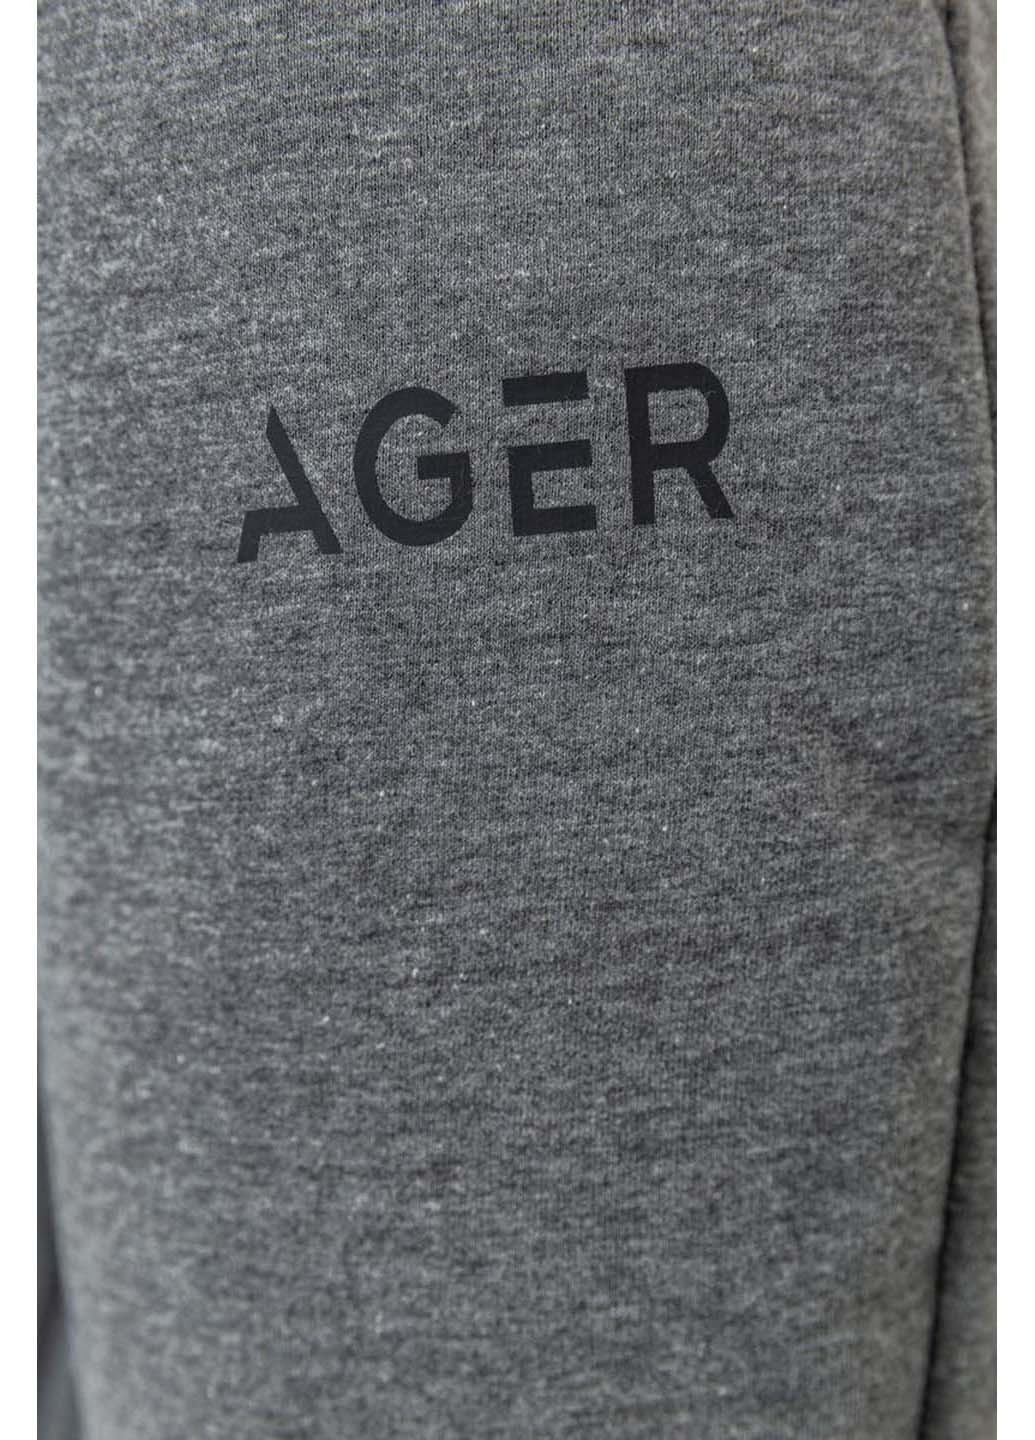 Спортивные штаны Ager (262991660)